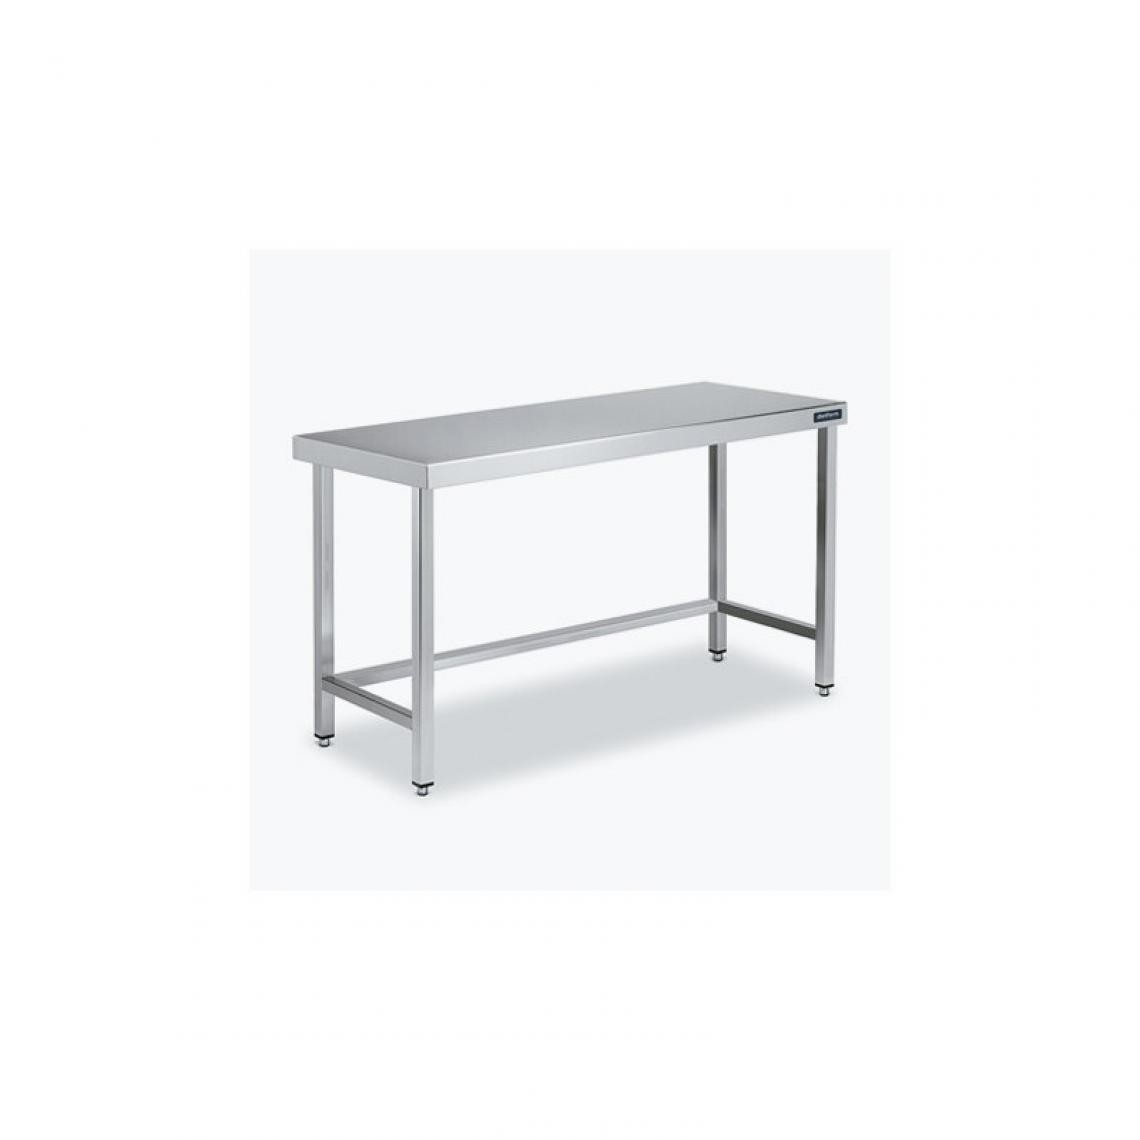 DISTFORM - Table Centrale 600x900 avec Renforts - Distform - Inox 18/102400x900x850mm - Tables à manger